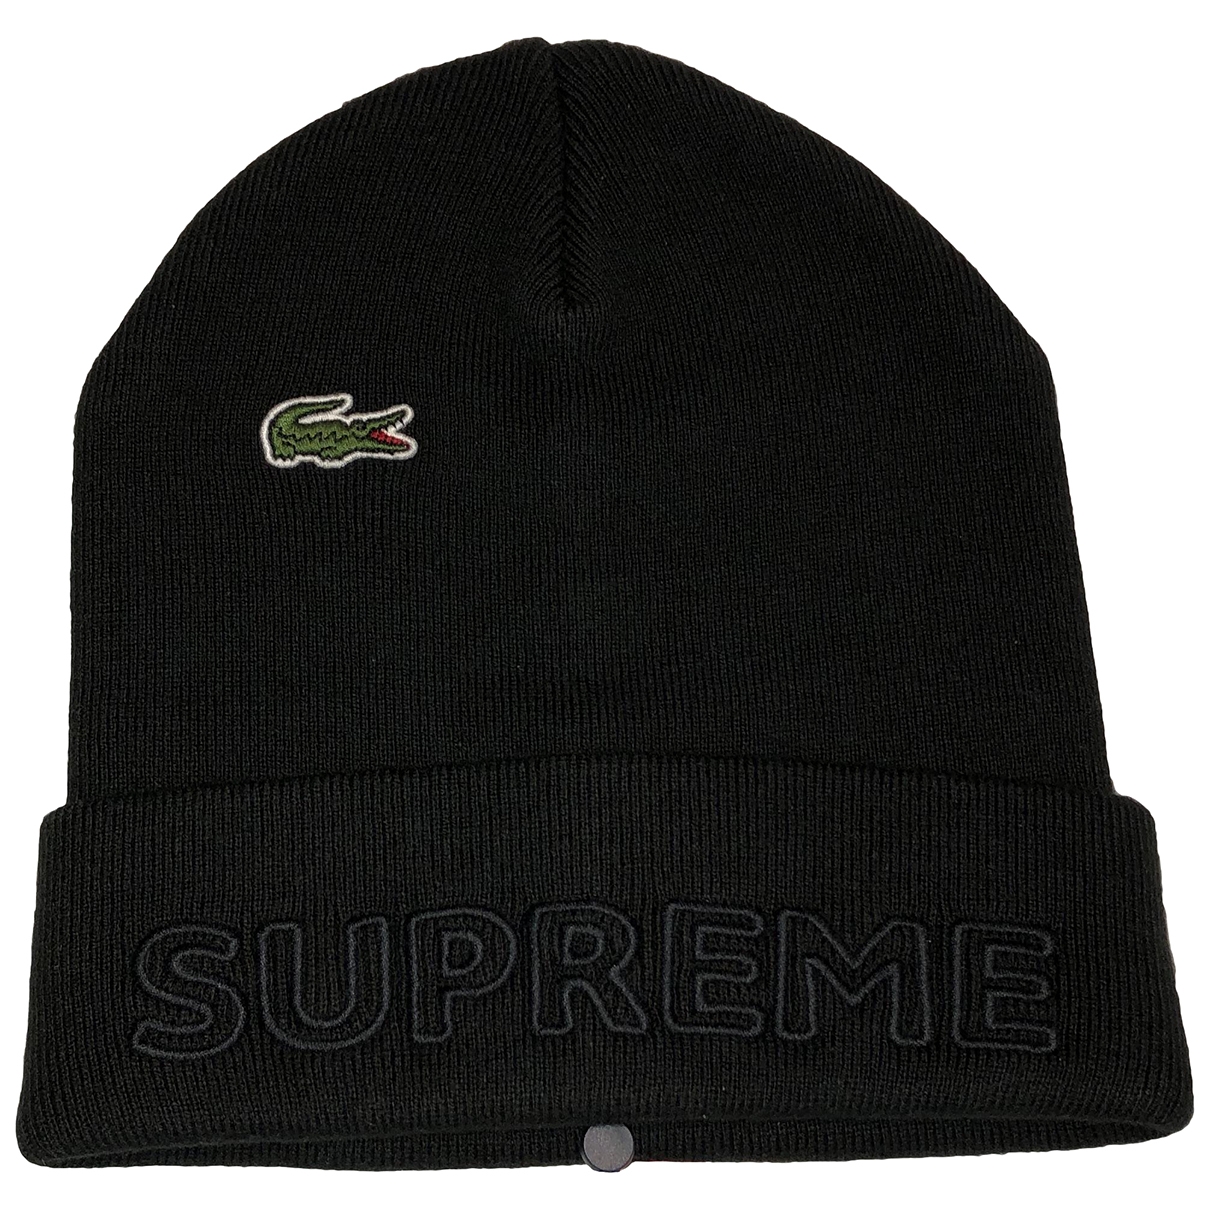 Lacoste x Supreme Hat